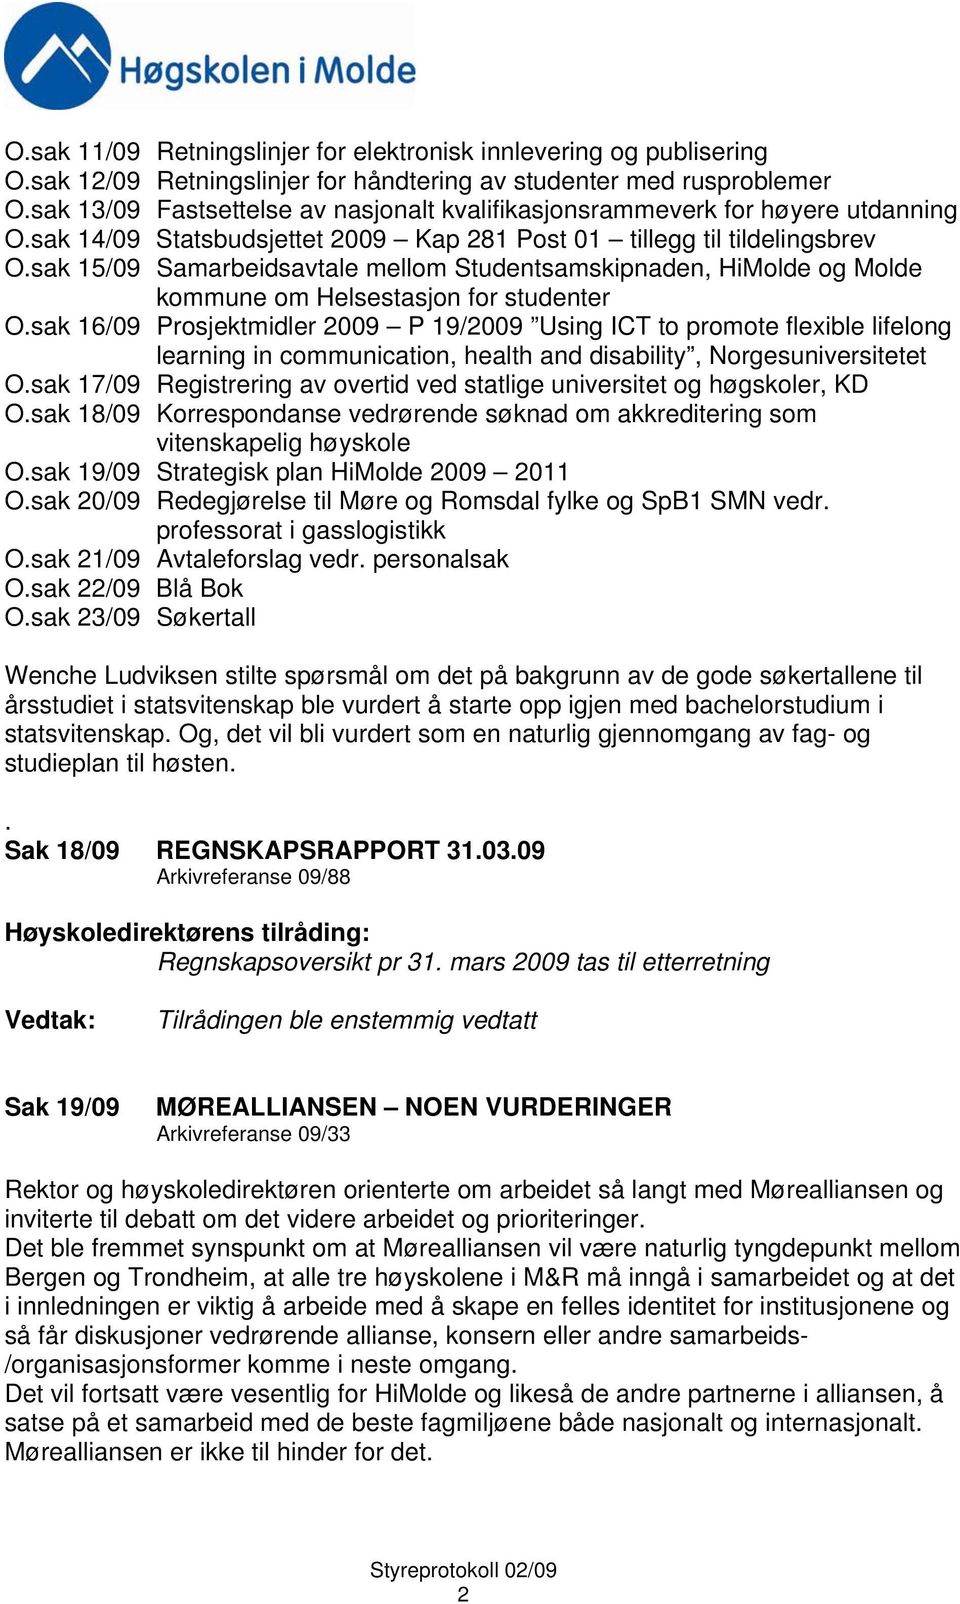 sak 15/09 Samarbeidsavtale mellom Studentsamskipnaden, HiMolde og Molde kommune om Helsestasjon for studenter O.